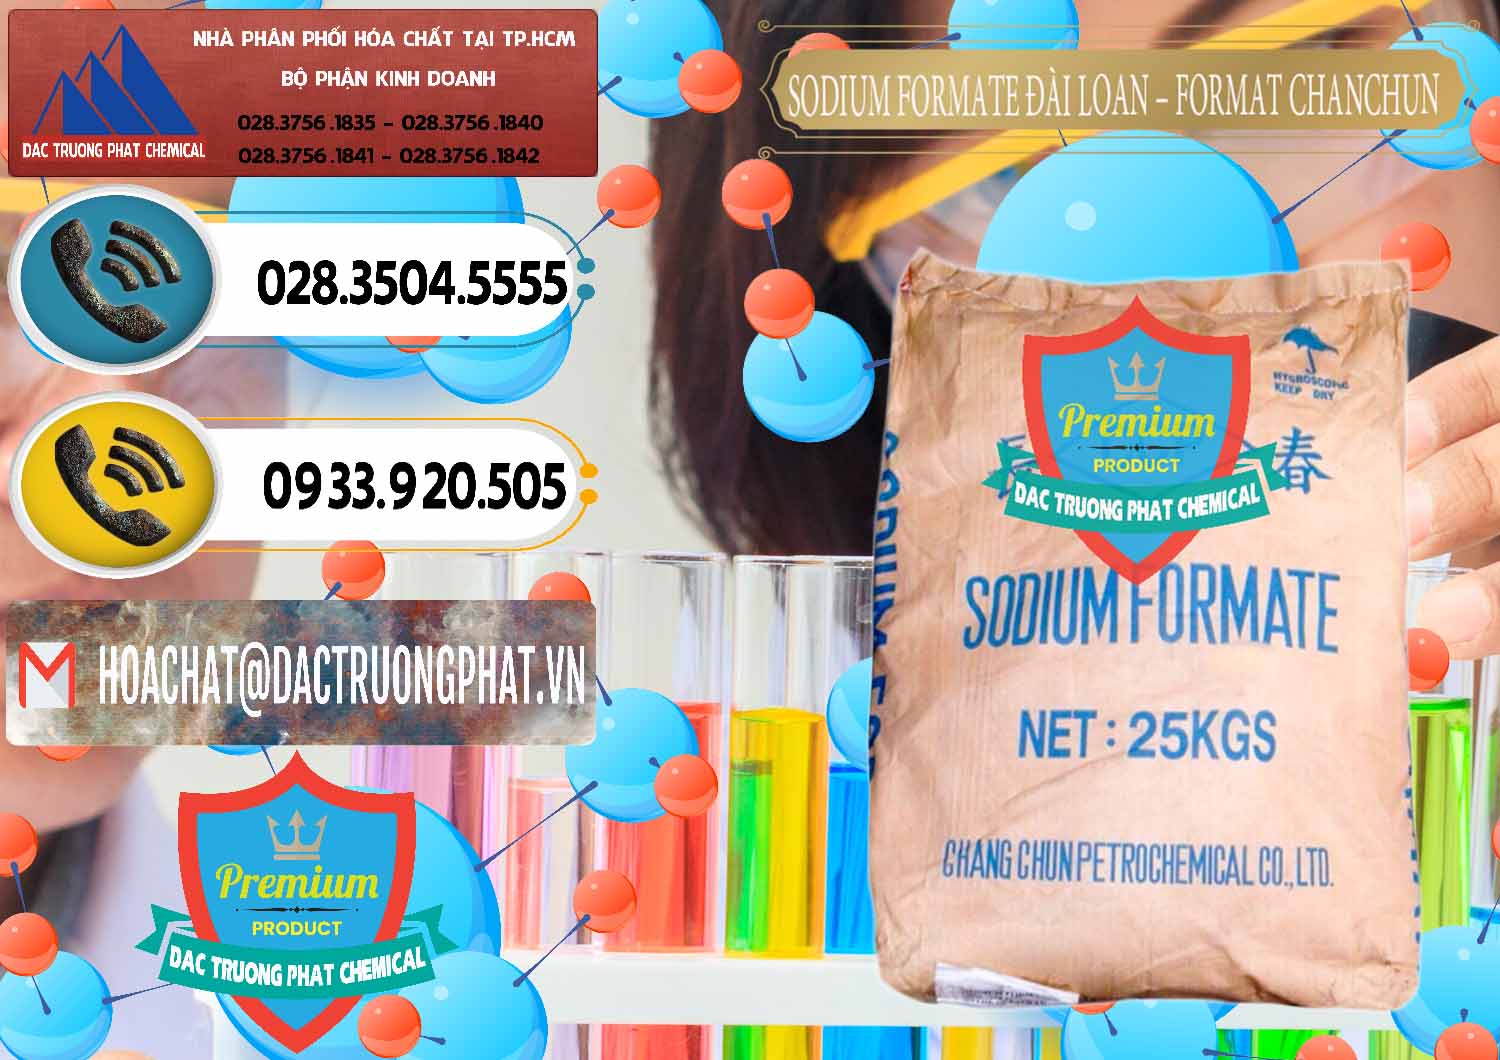 Nơi chuyên kinh doanh ( bán ) Sodium Formate - Natri Format Đài Loan Taiwan - 0141 - Nhà phân phối - bán hóa chất tại TP.HCM - hoachatdetnhuom.vn